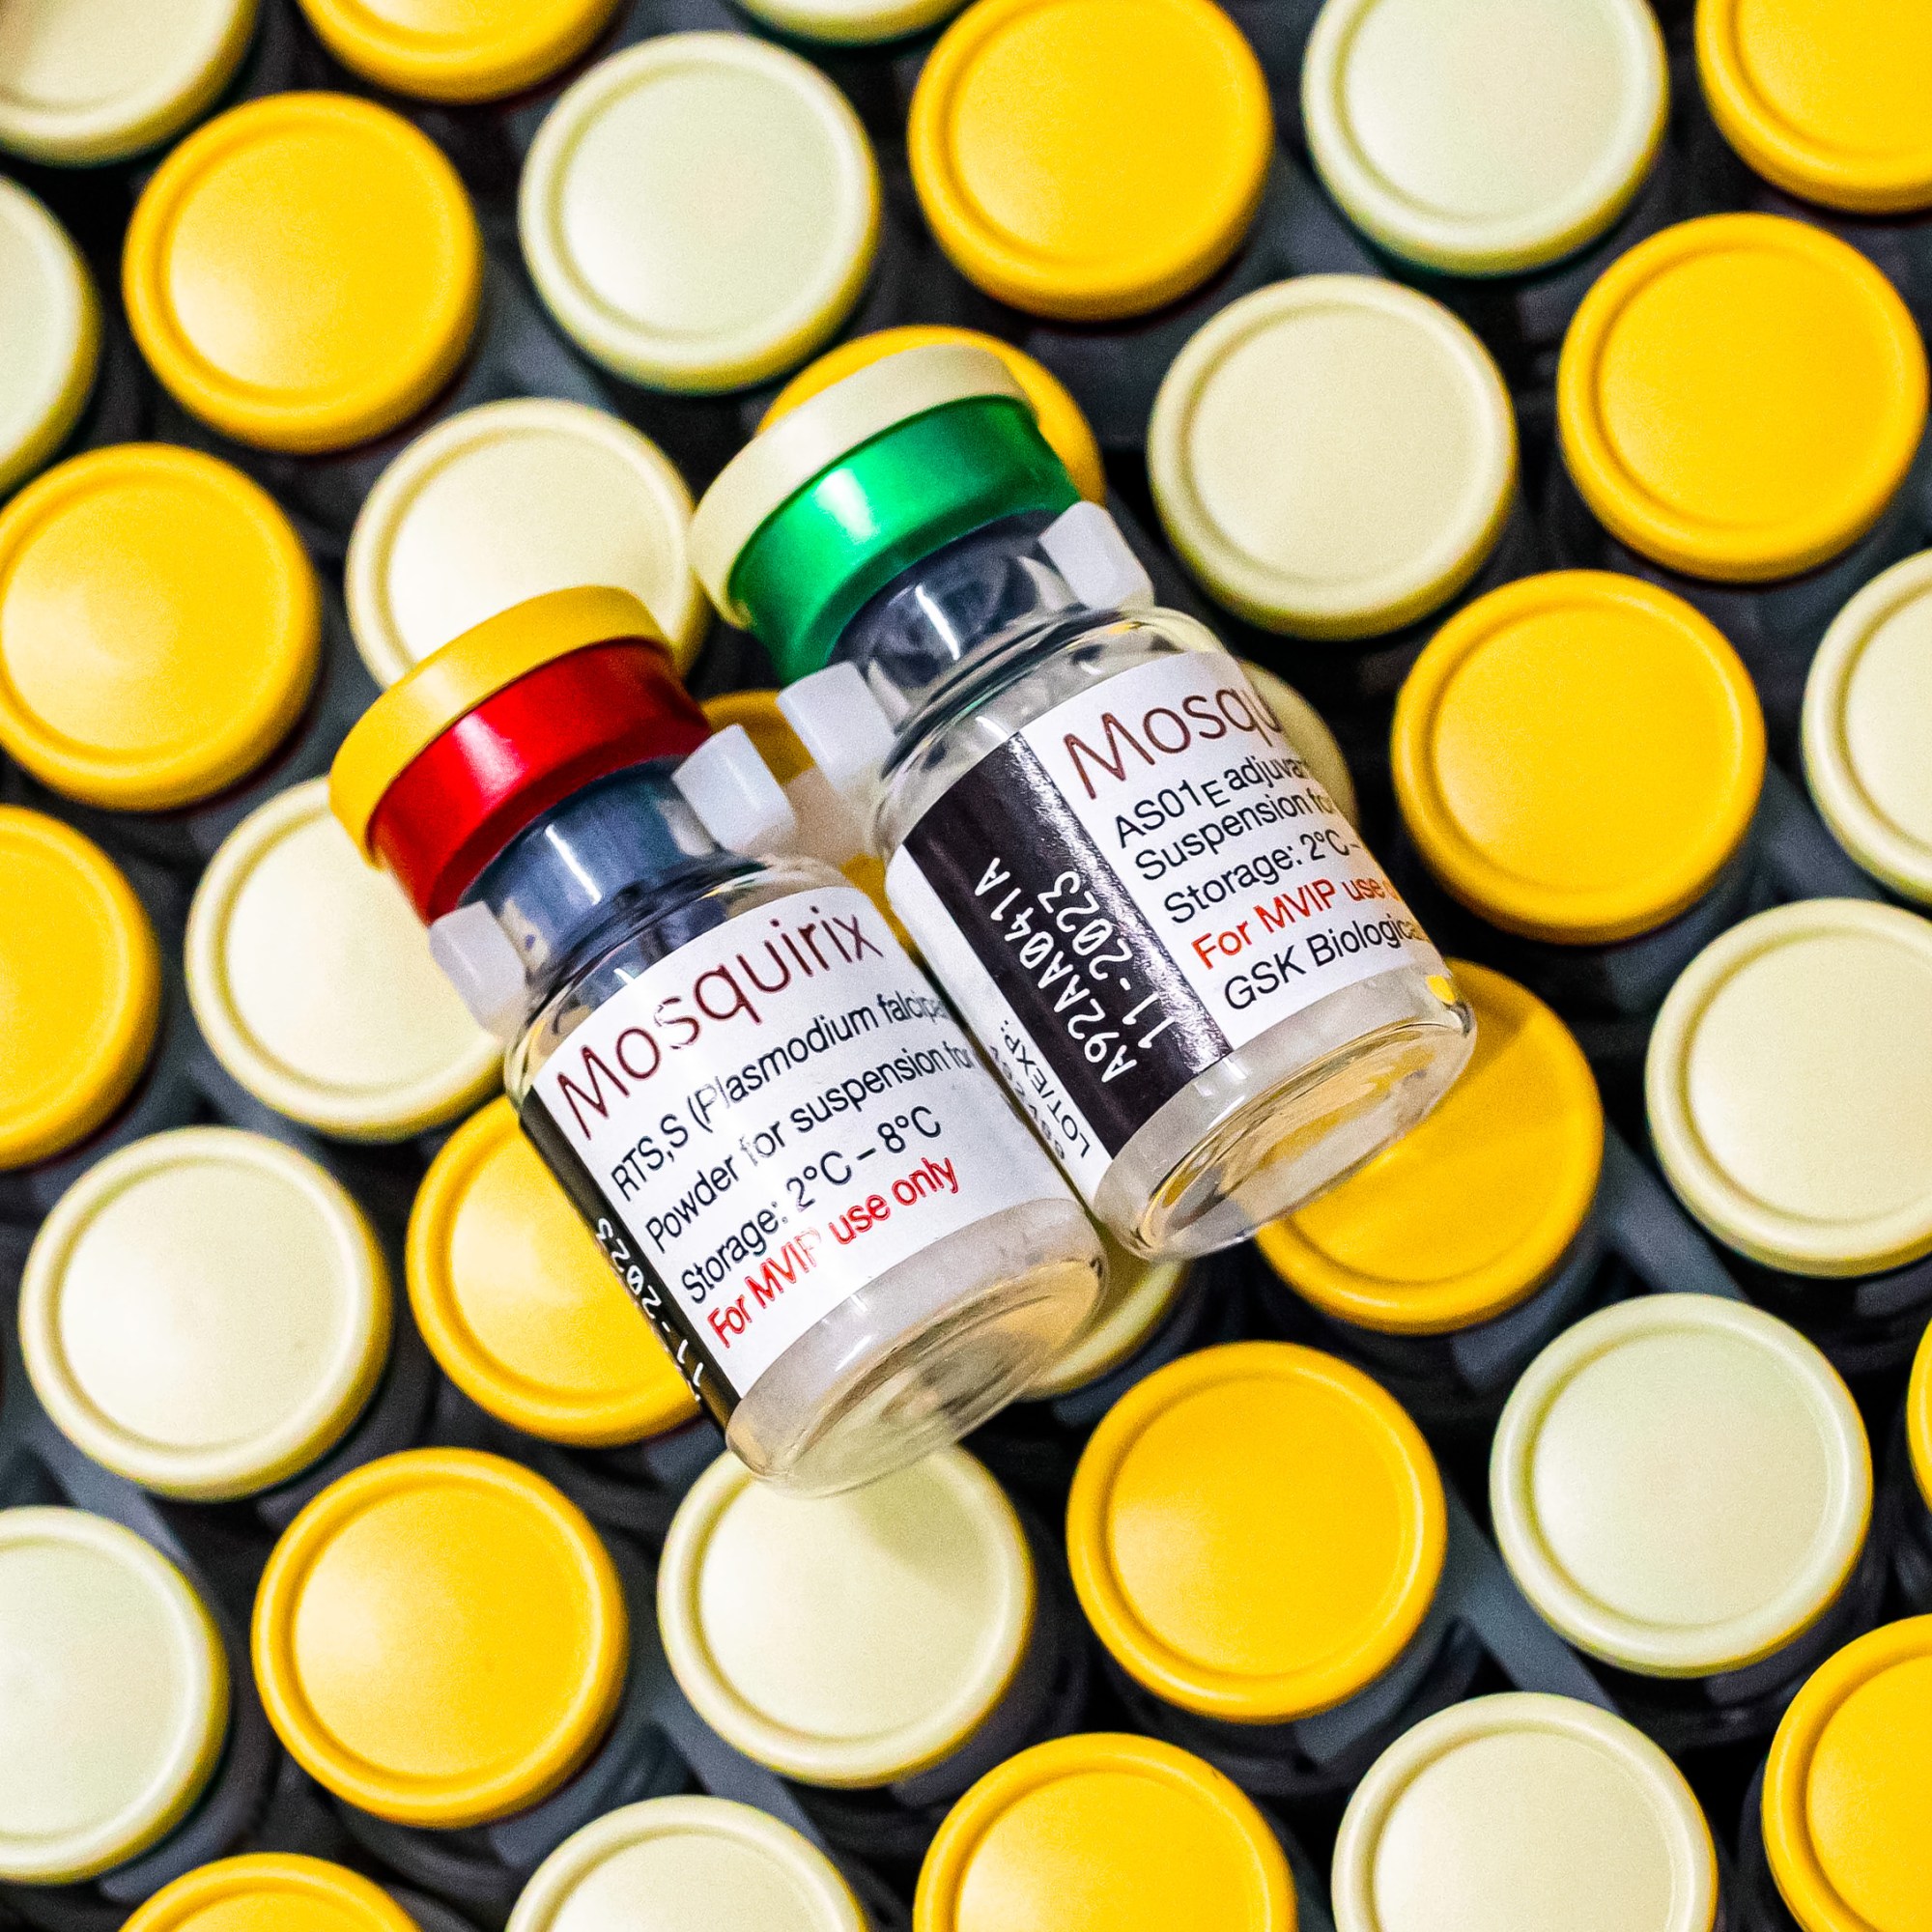 mosquirix vaccine bottles